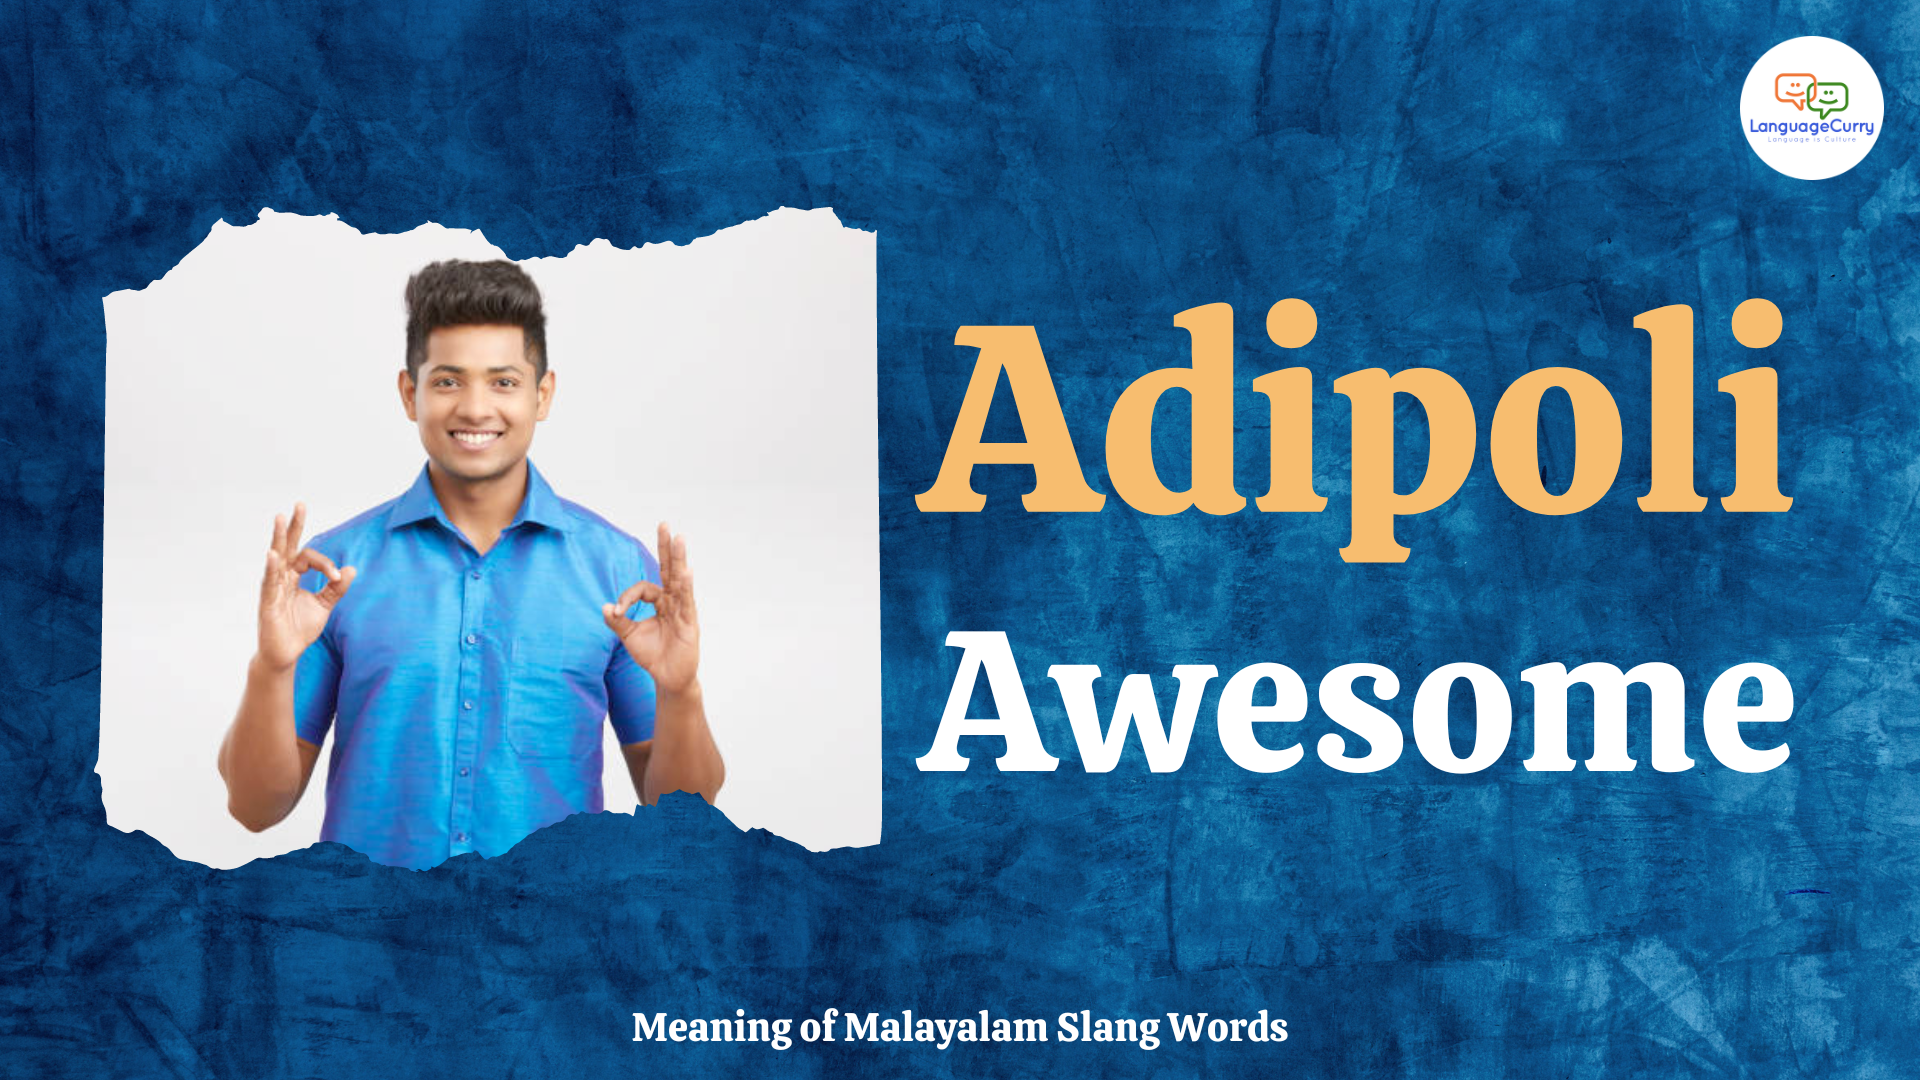 Malayalam slang word adipoli 